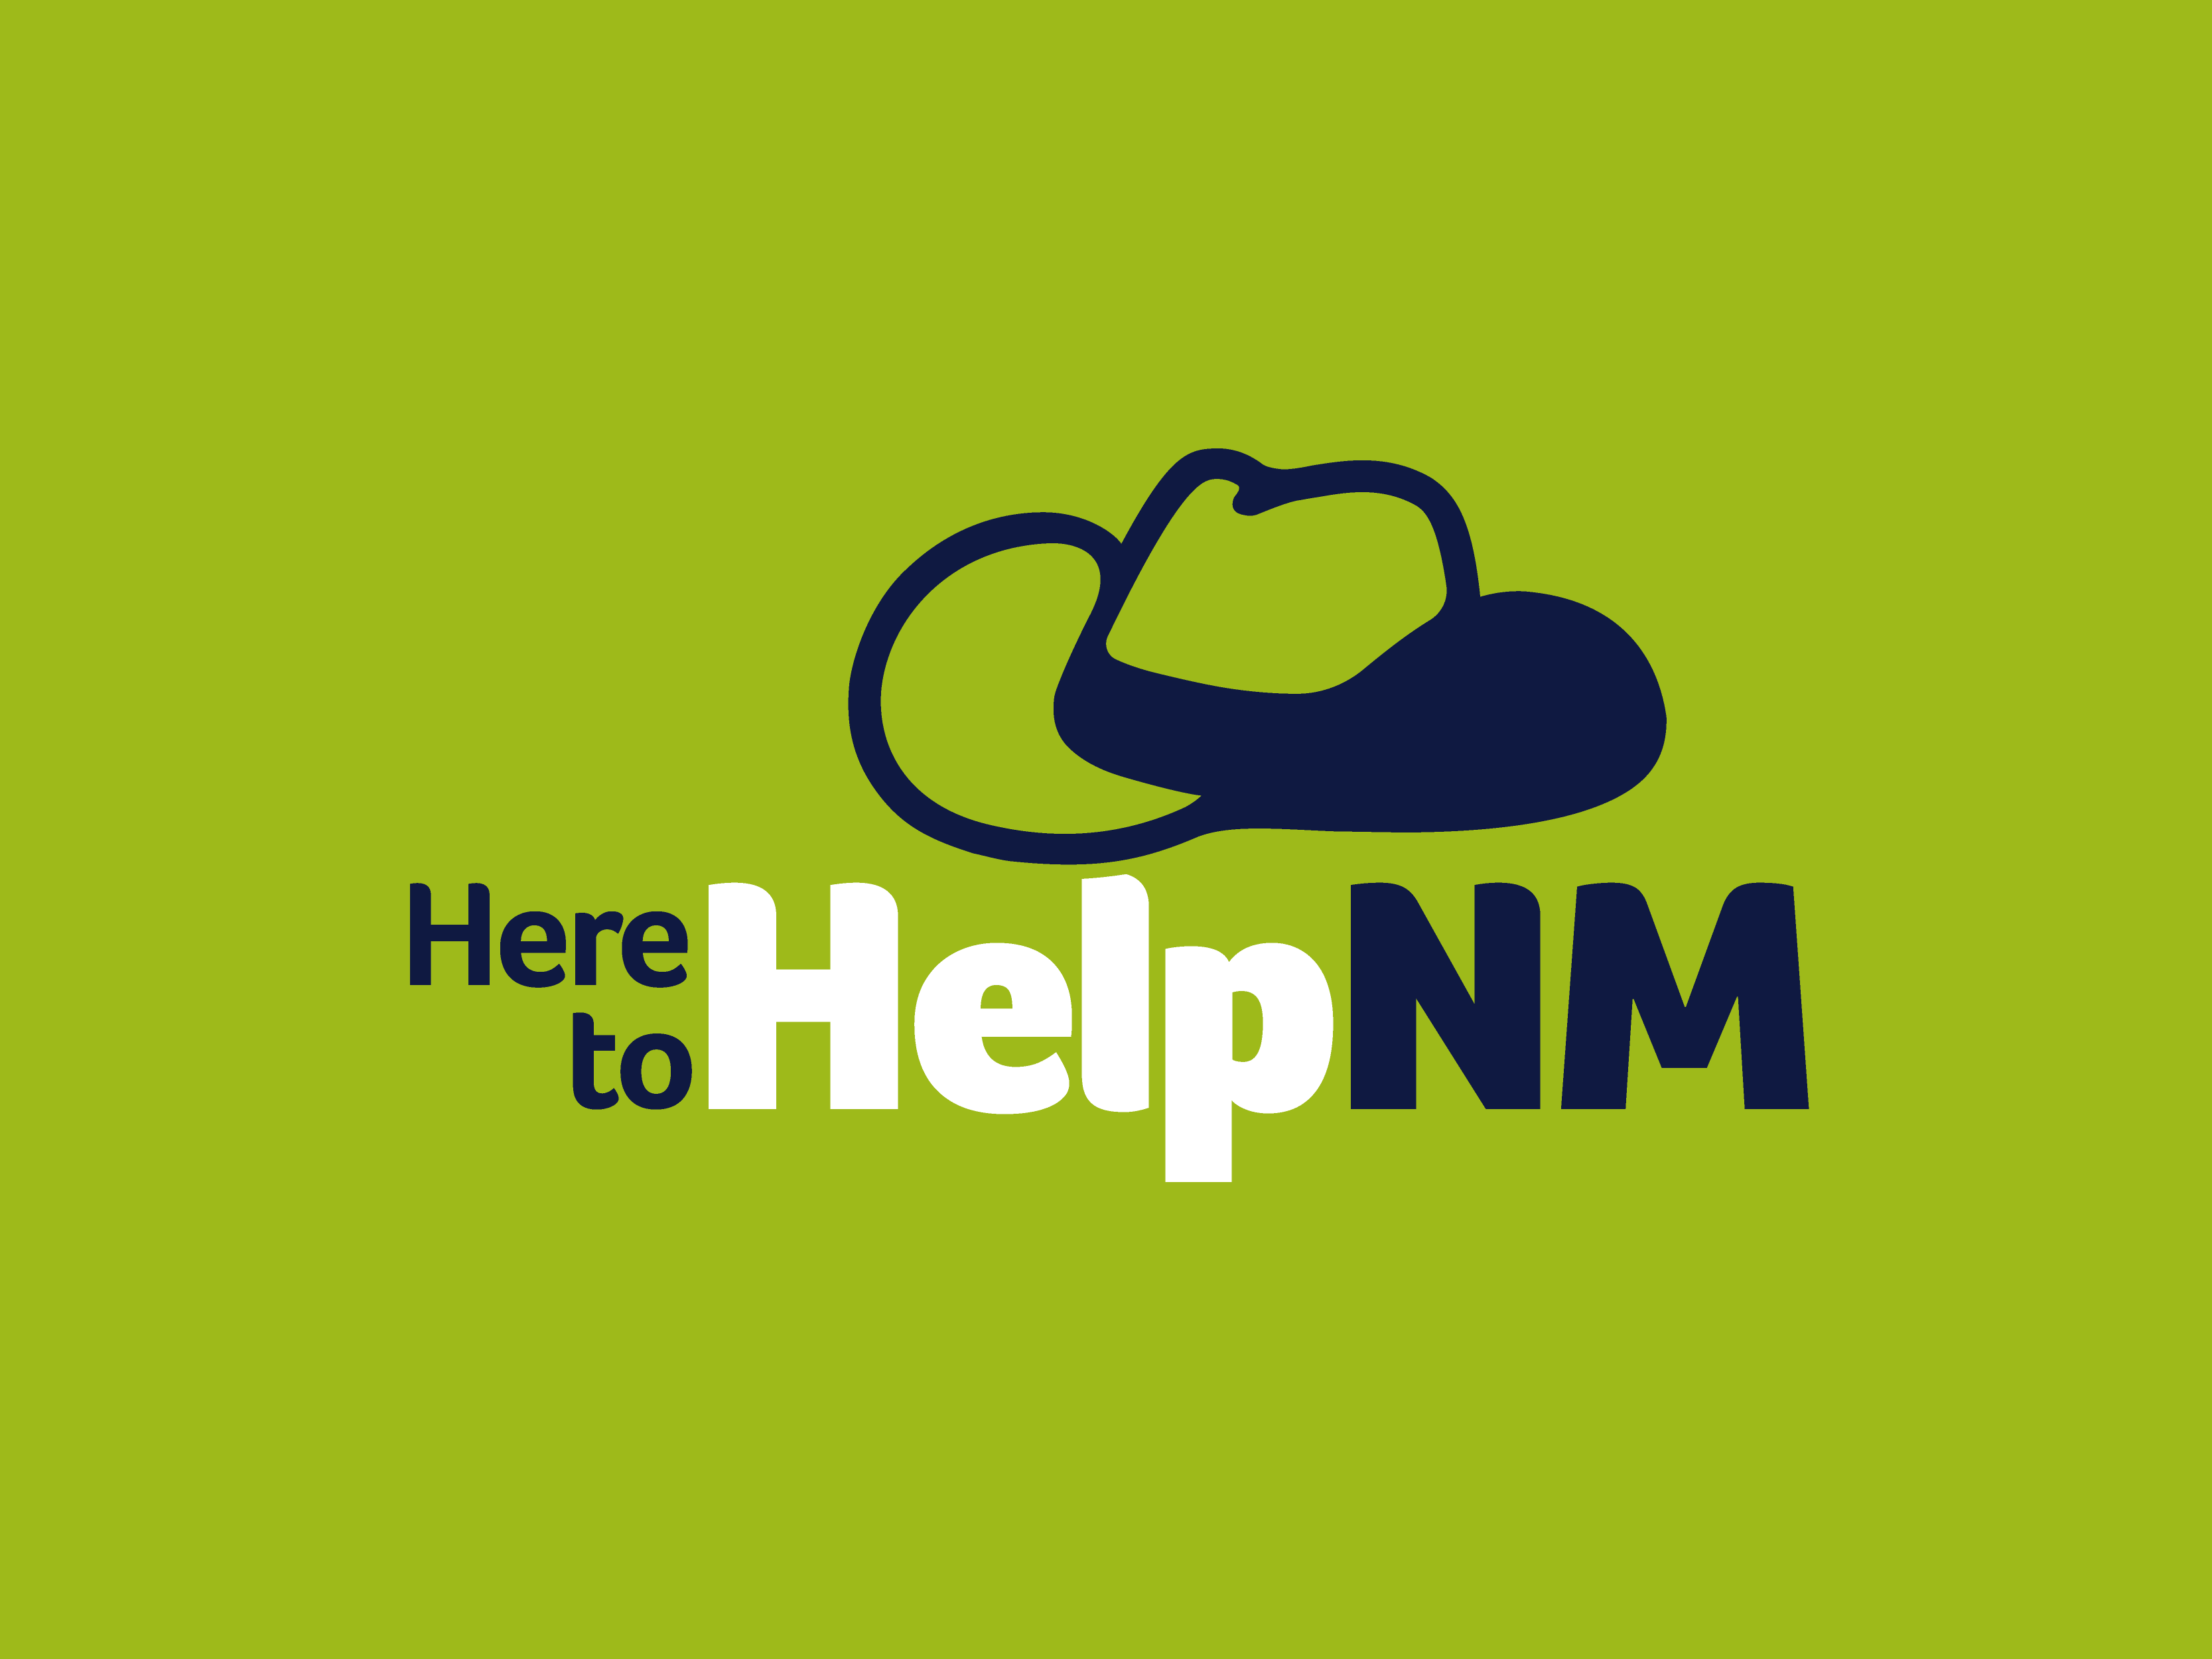 Un logotipo verde que incluye el texto “Aquí para ayudar a NM” y una imagen de un sombrero de vaquero.